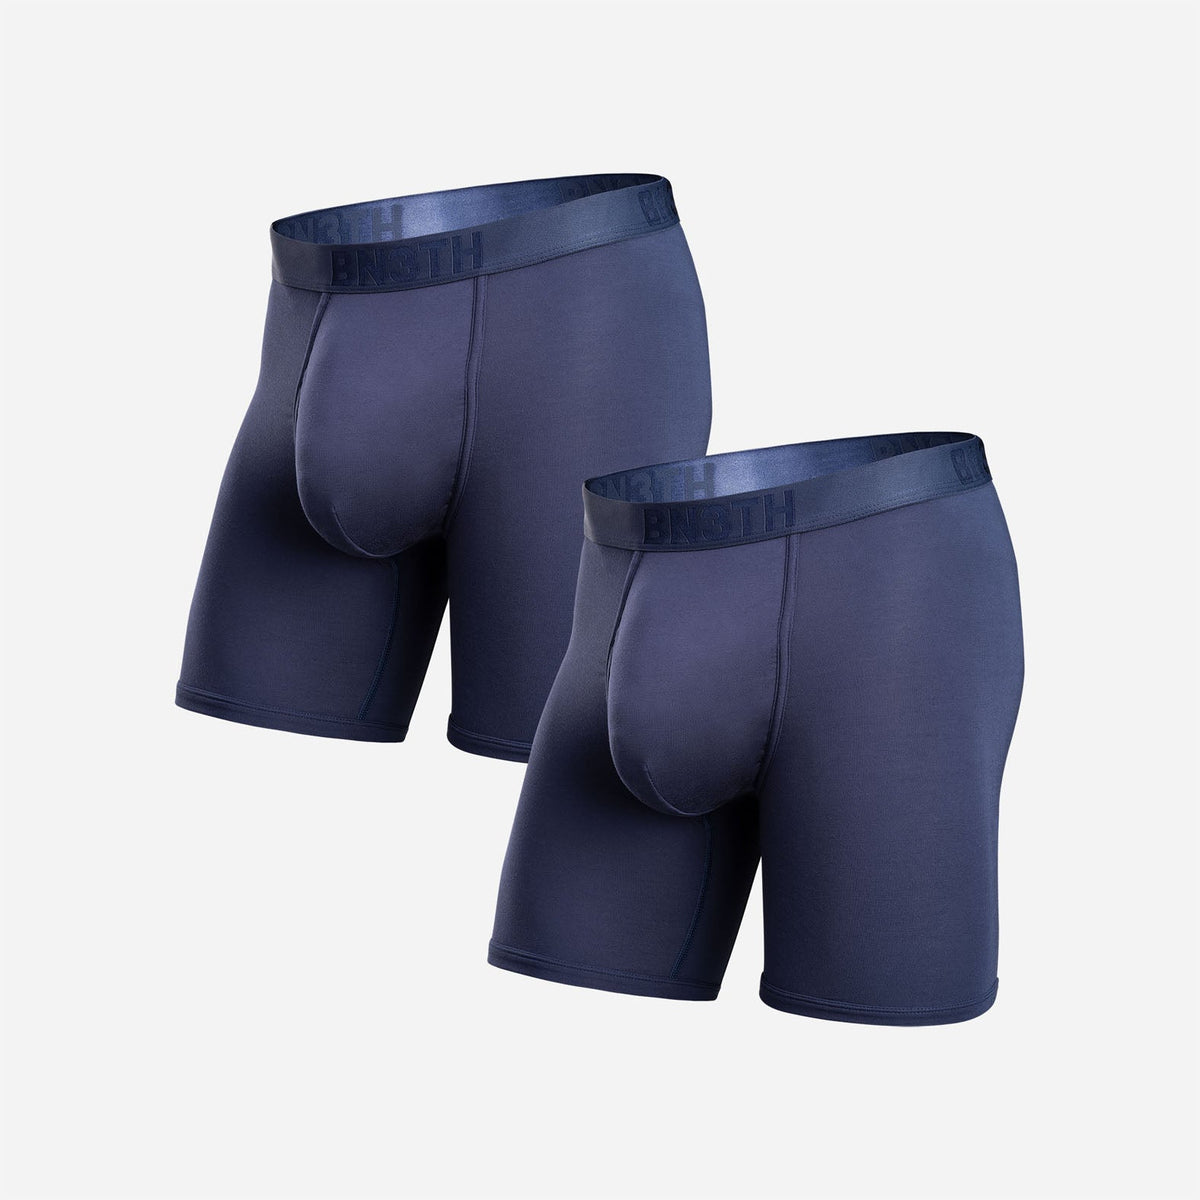 Cotton Blue Lux Classic Mens Underwear, Handwash, Size: 80cm at Rs